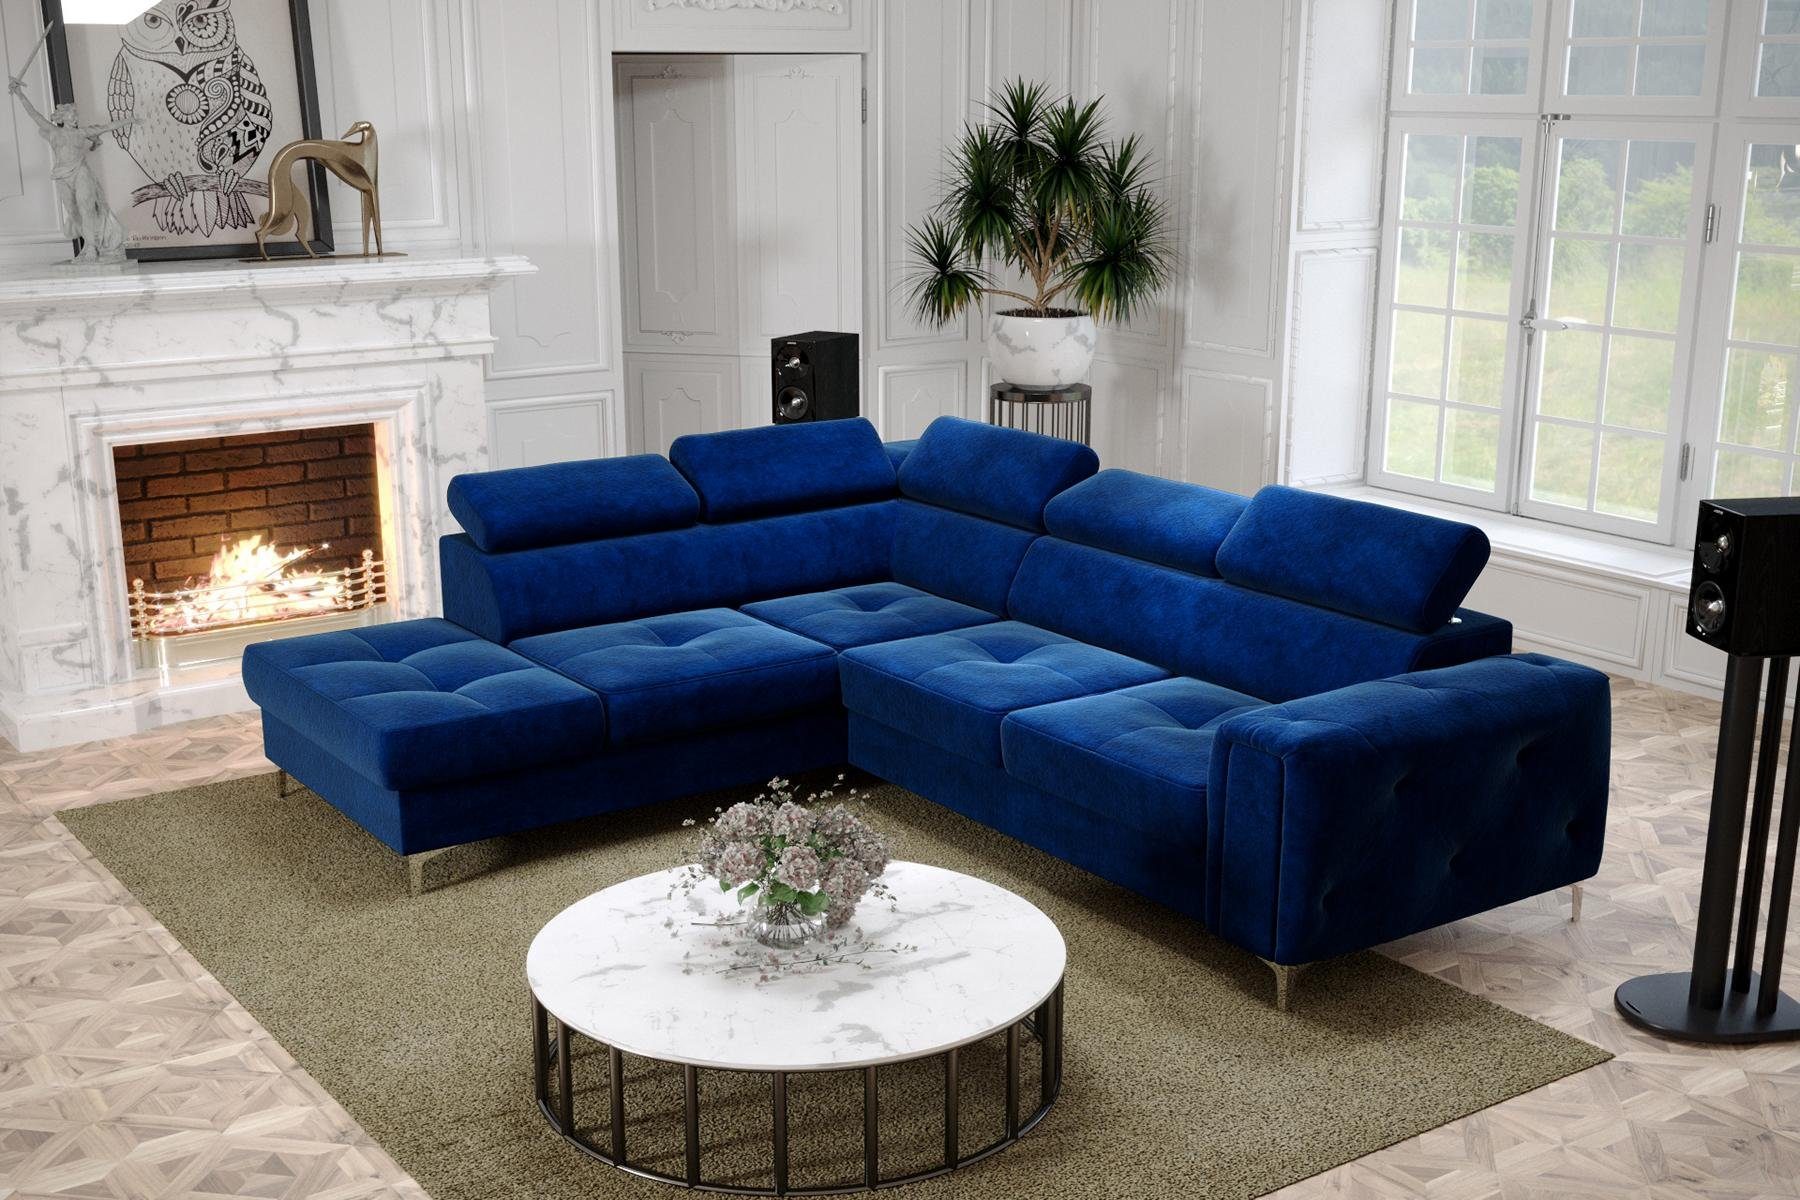 JVmoebel Ecksofa, Design Ecksofa L-Form Couch Polsterung Luxus Wohnzimmer Soft Blau